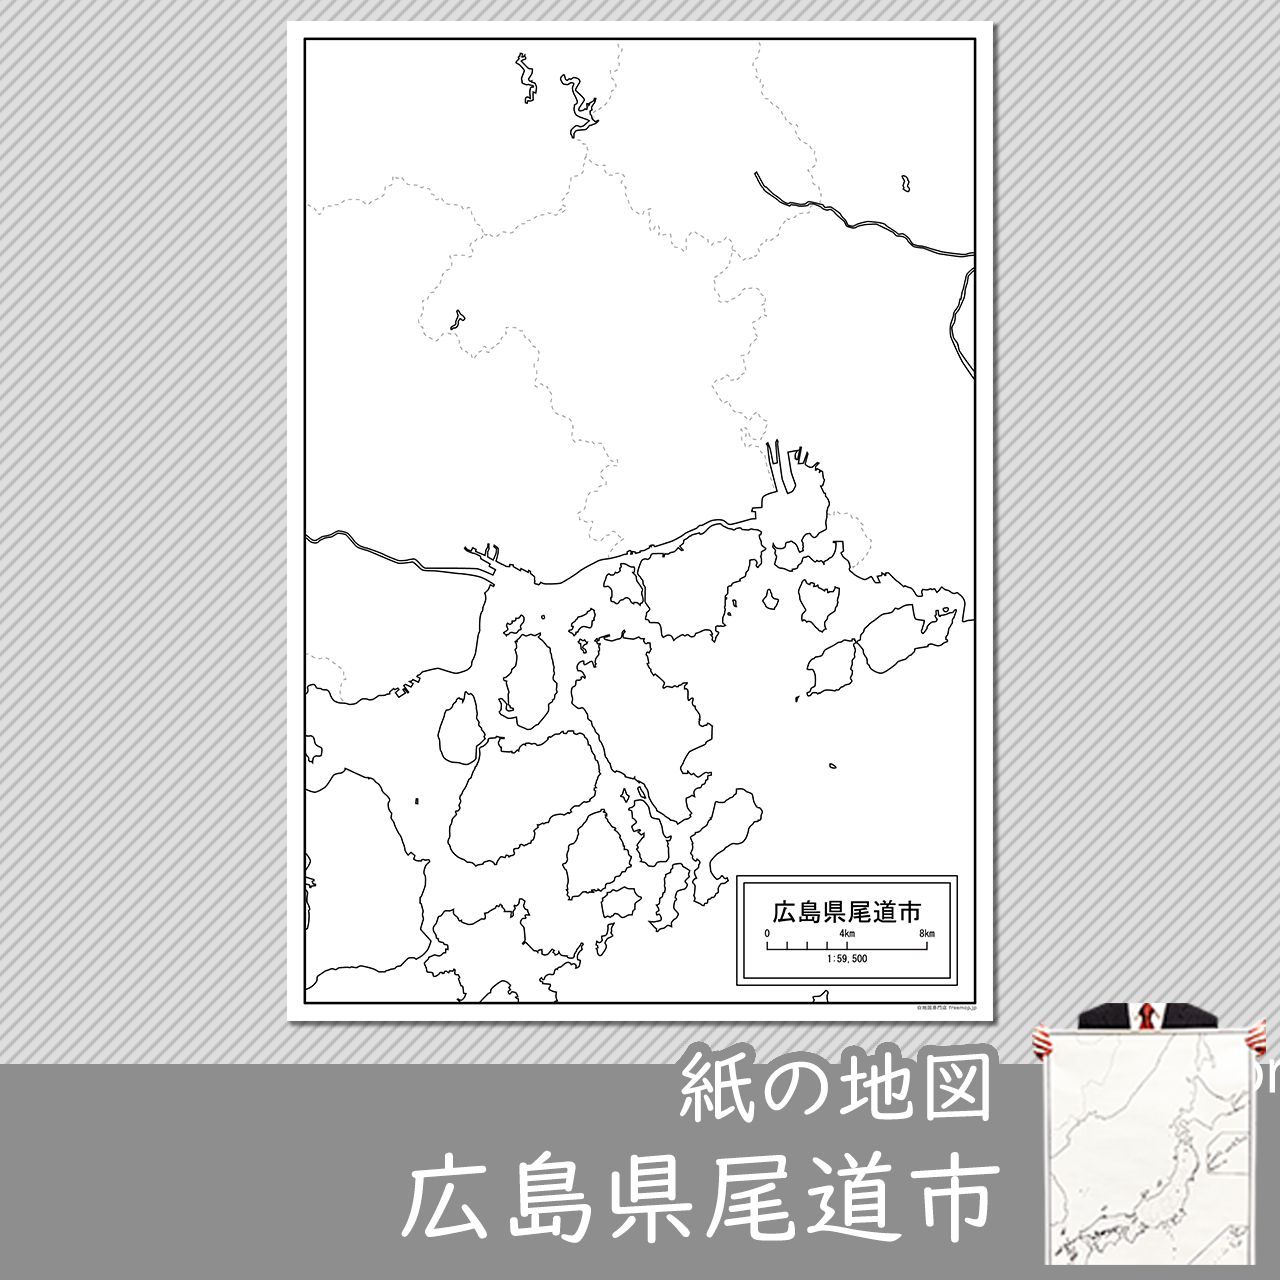 尾道市の紙の白地図のサムネイル